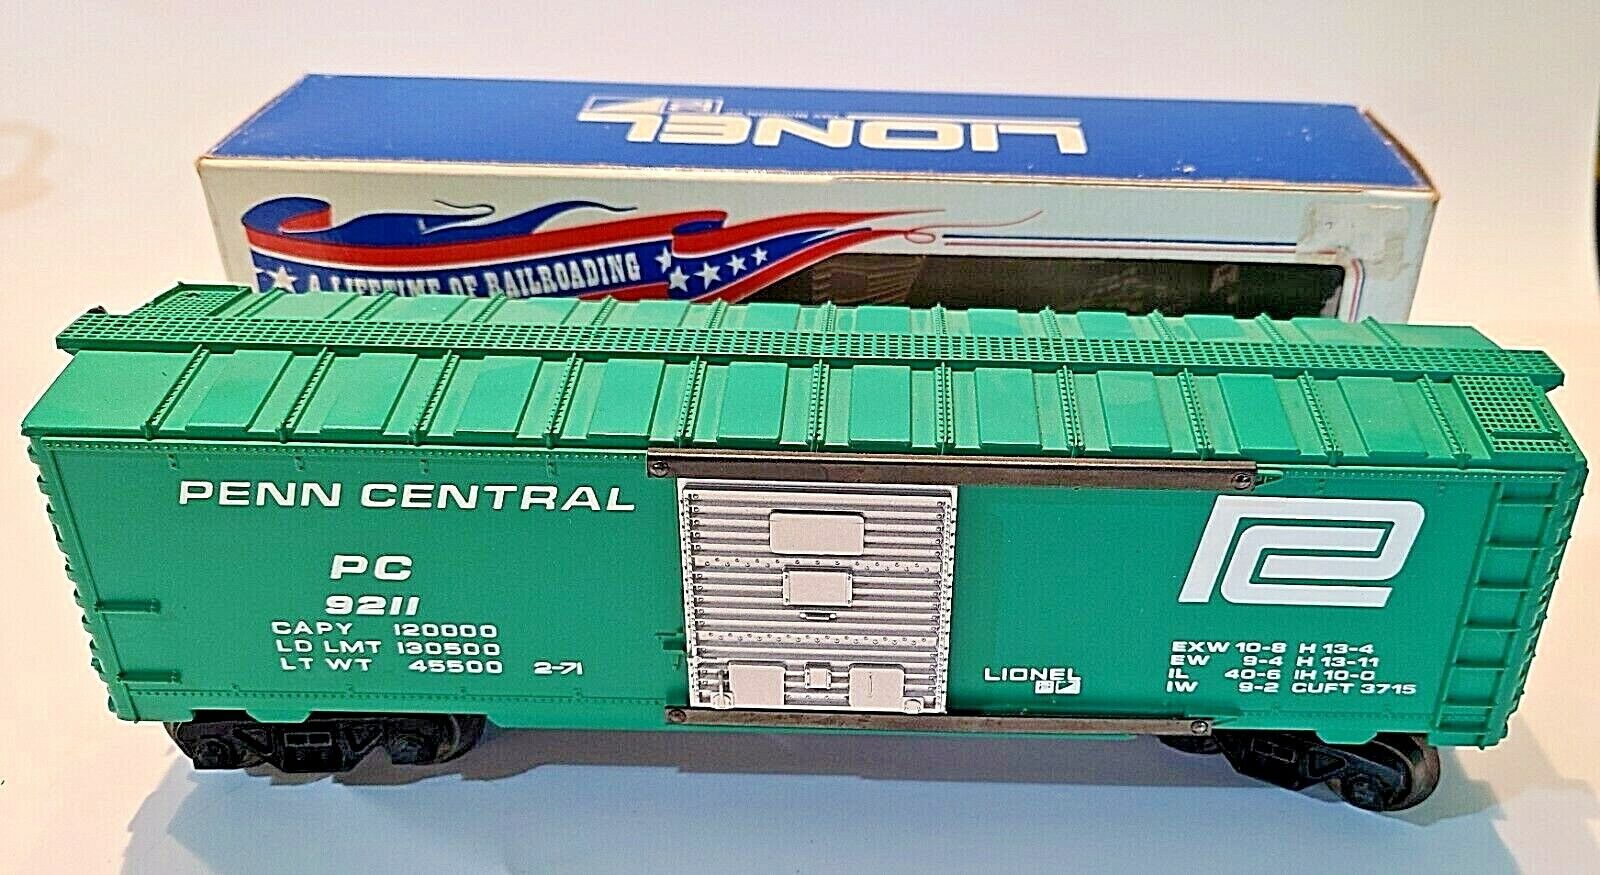 Lionel 6-9211 Penn Central Boxcar w/ Box